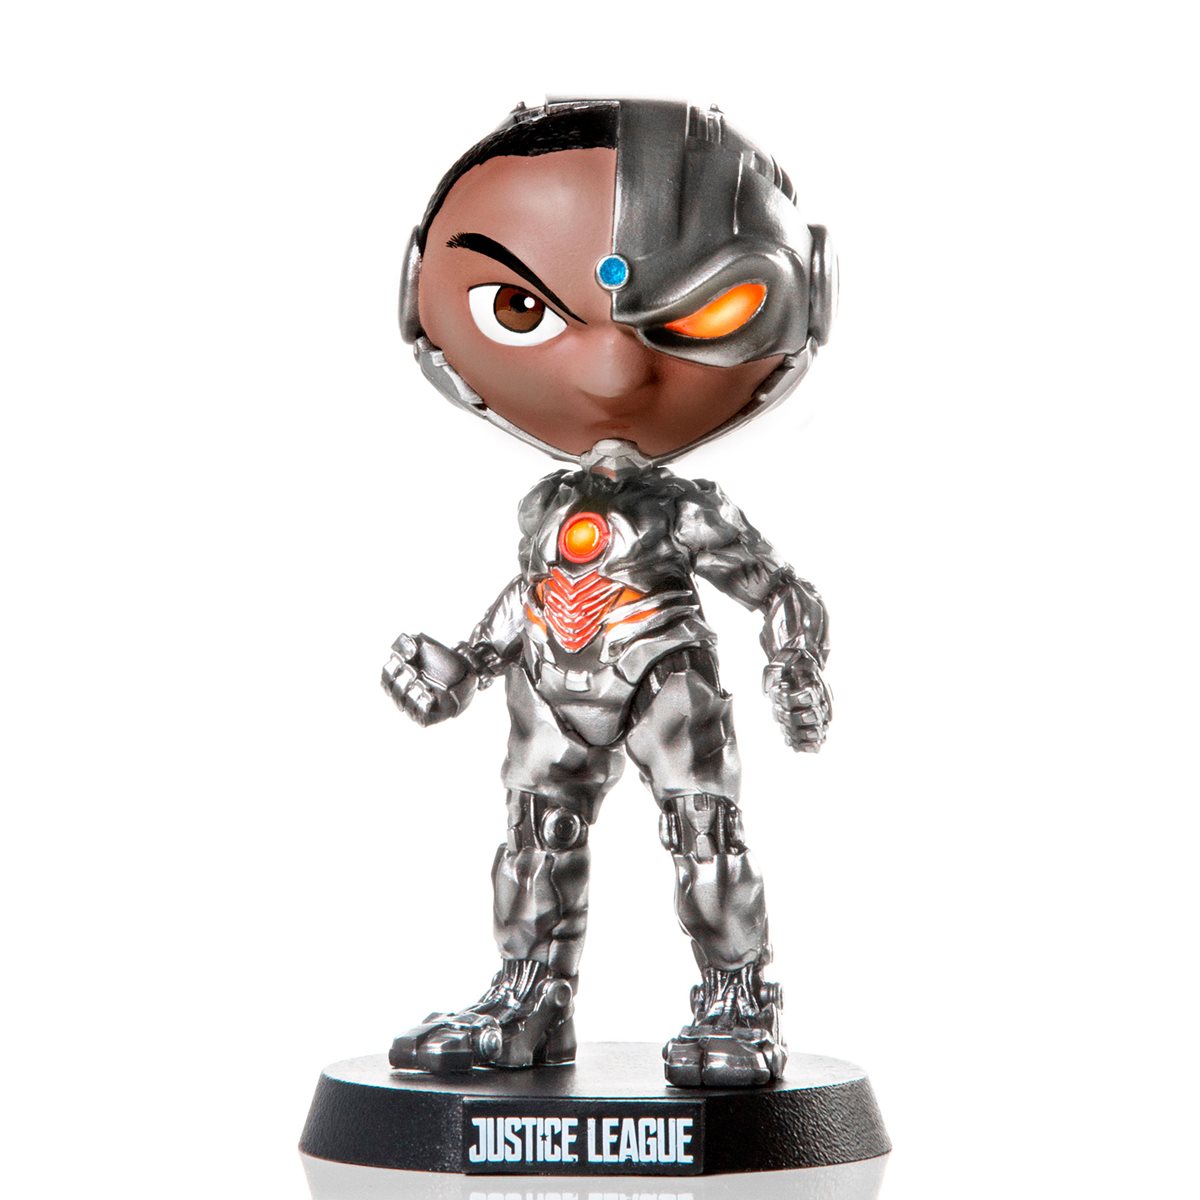 justice league cyborg figure